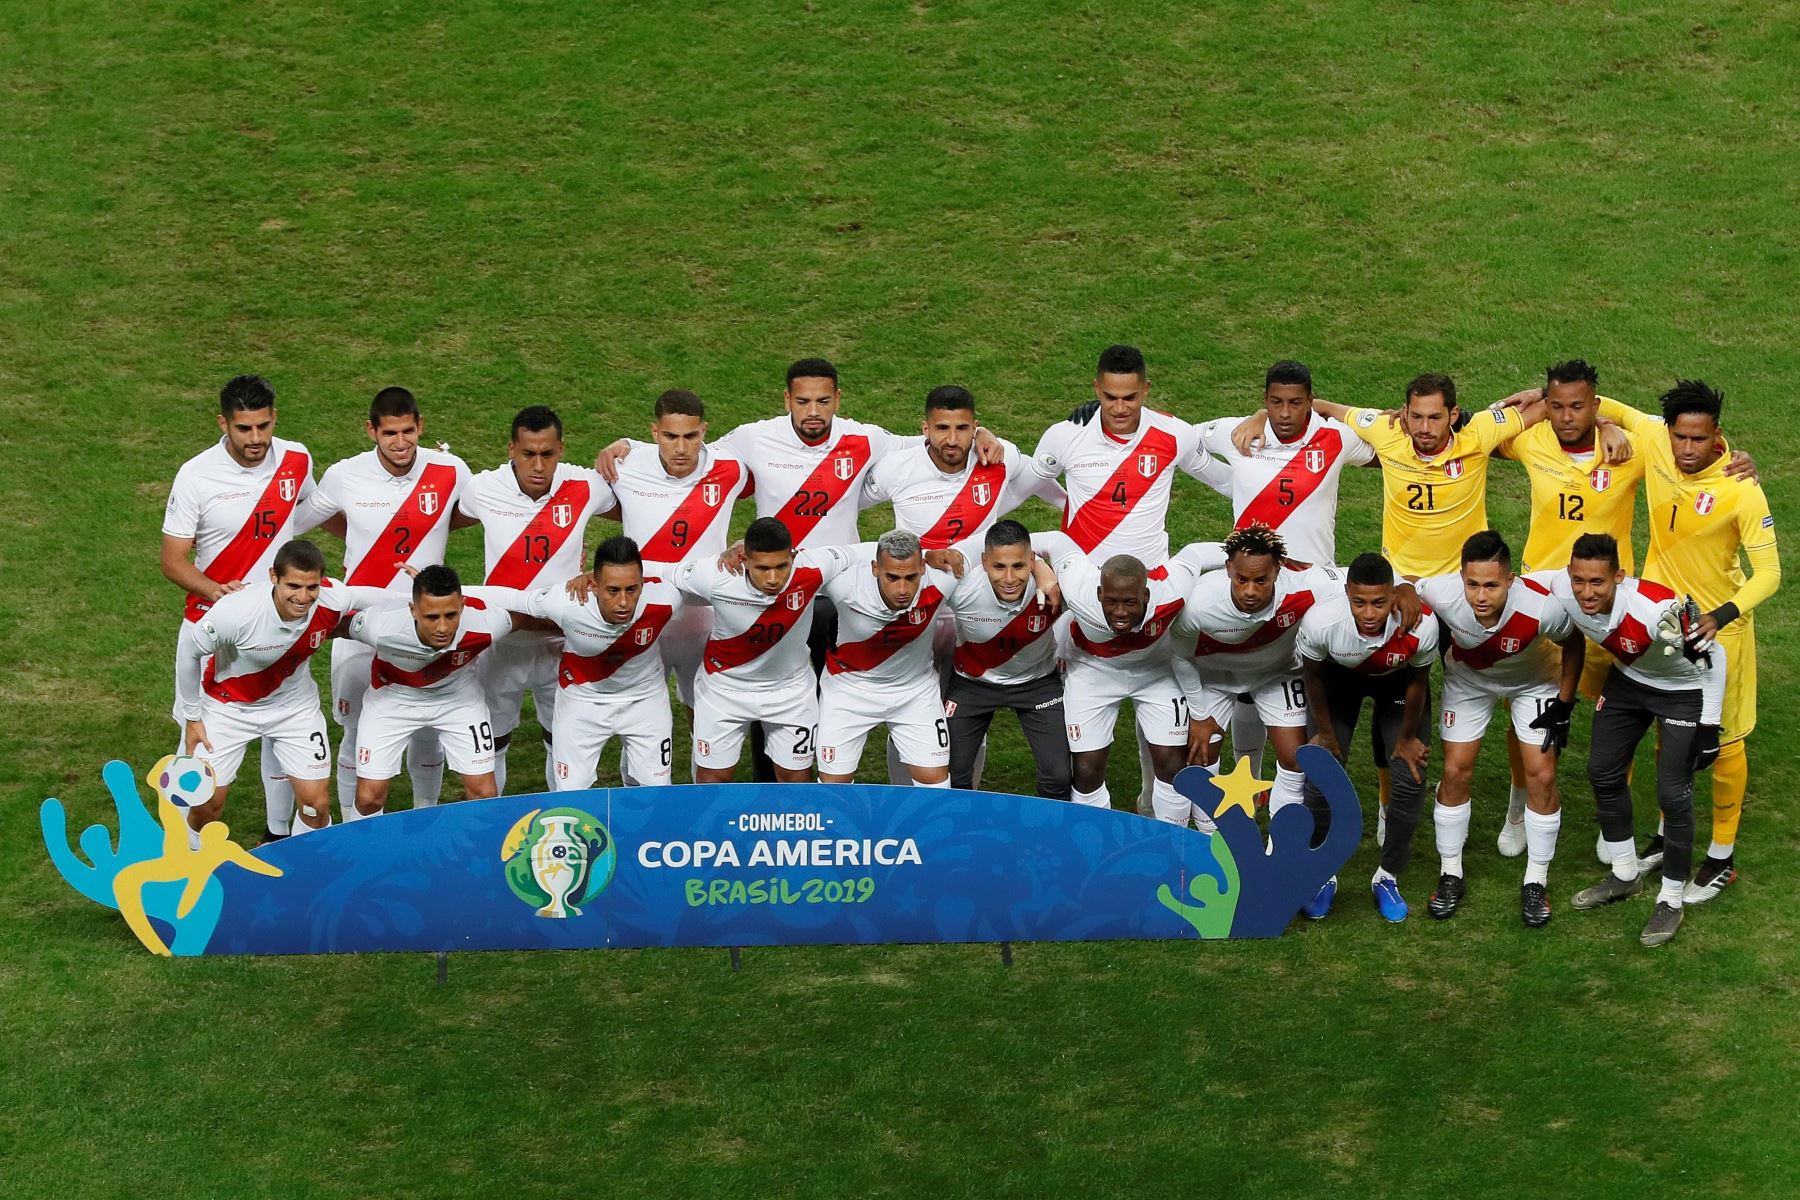 Jugadores de Perú durante el partido Chile-Perú de semifinales de la Copa América de Fútbol 2019, en el Estadio Arena do Grêmio de Porto Alegre, Brasil.
Foto: EFE